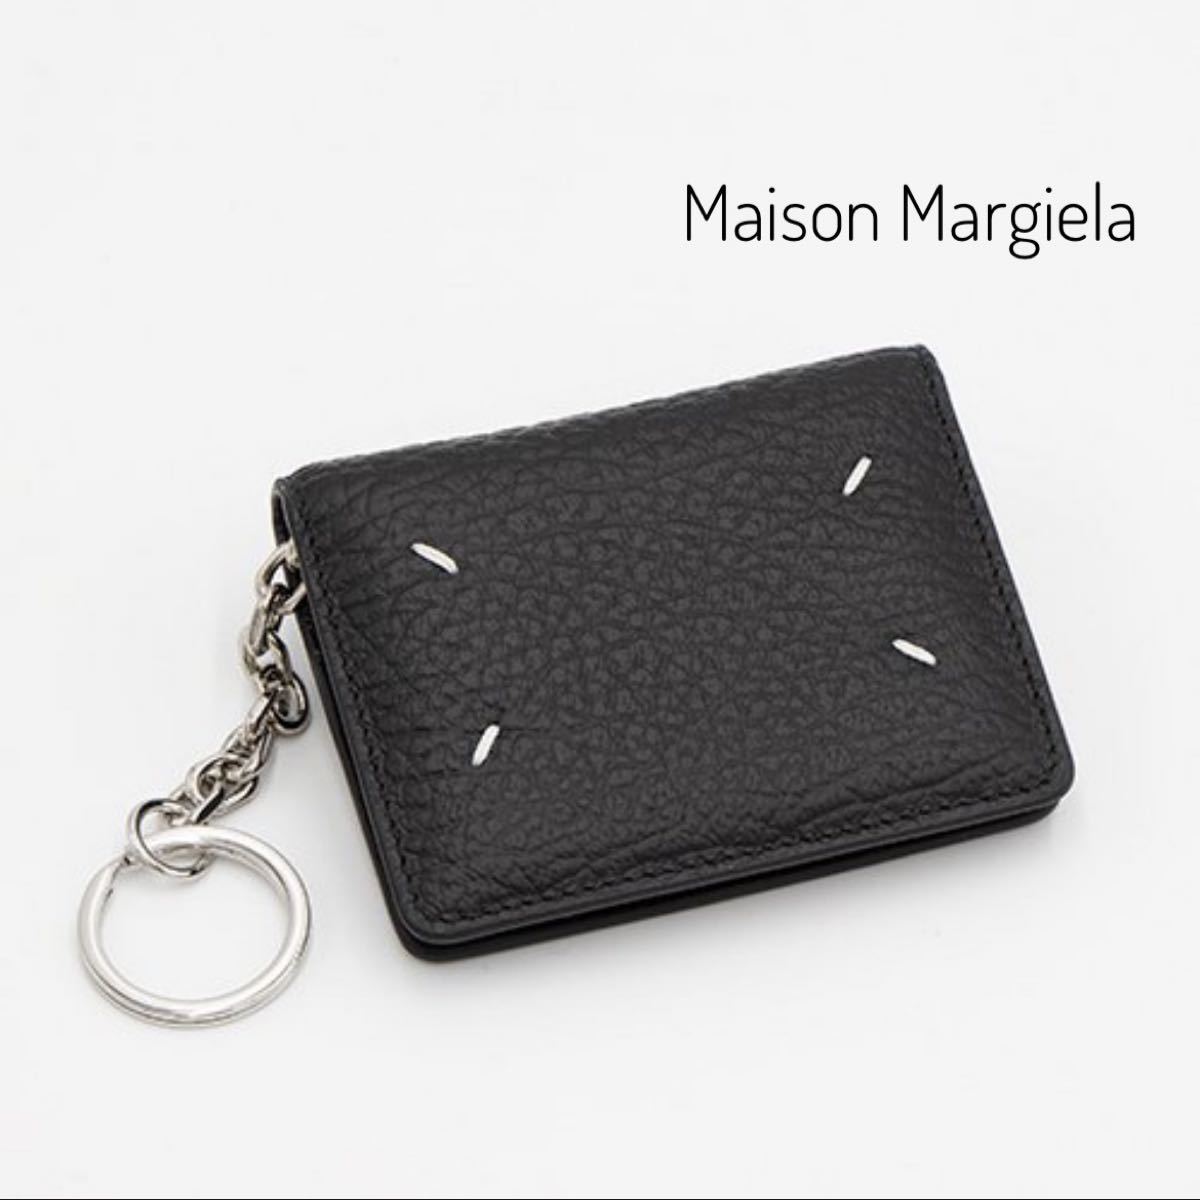 Maison Margiela カードケース 折り財布 小物 メンズ 限定ブランド